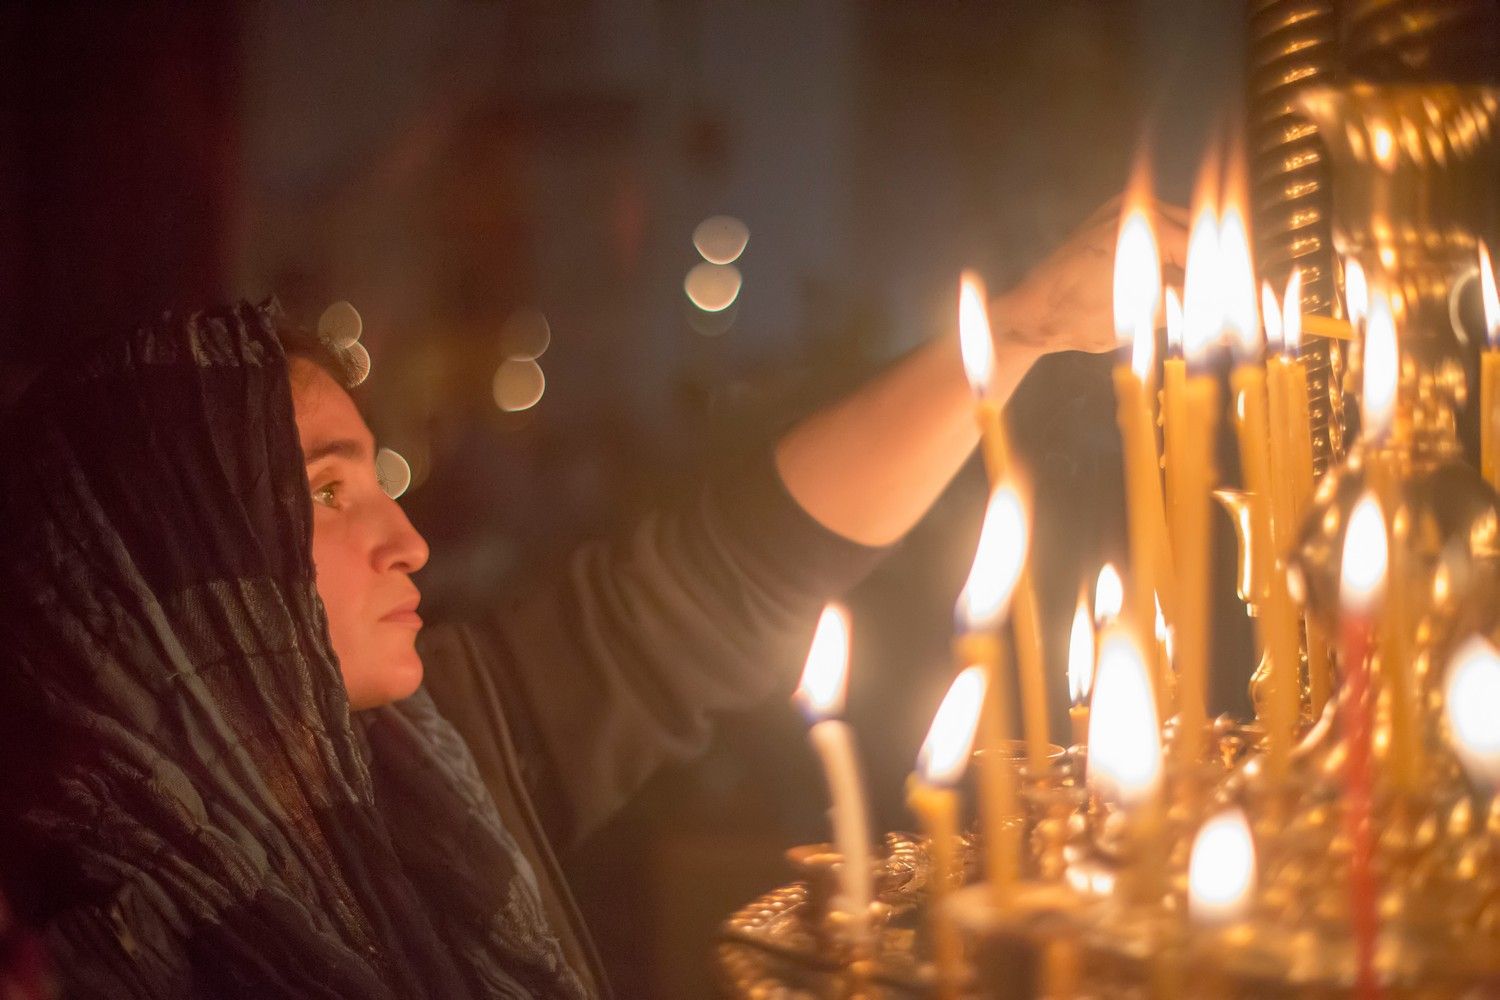 Светлое Христово Воскресенье – Пасха. Высокопреосвященный архиепископ Александр совершил ночное Пасхальное богослужение.